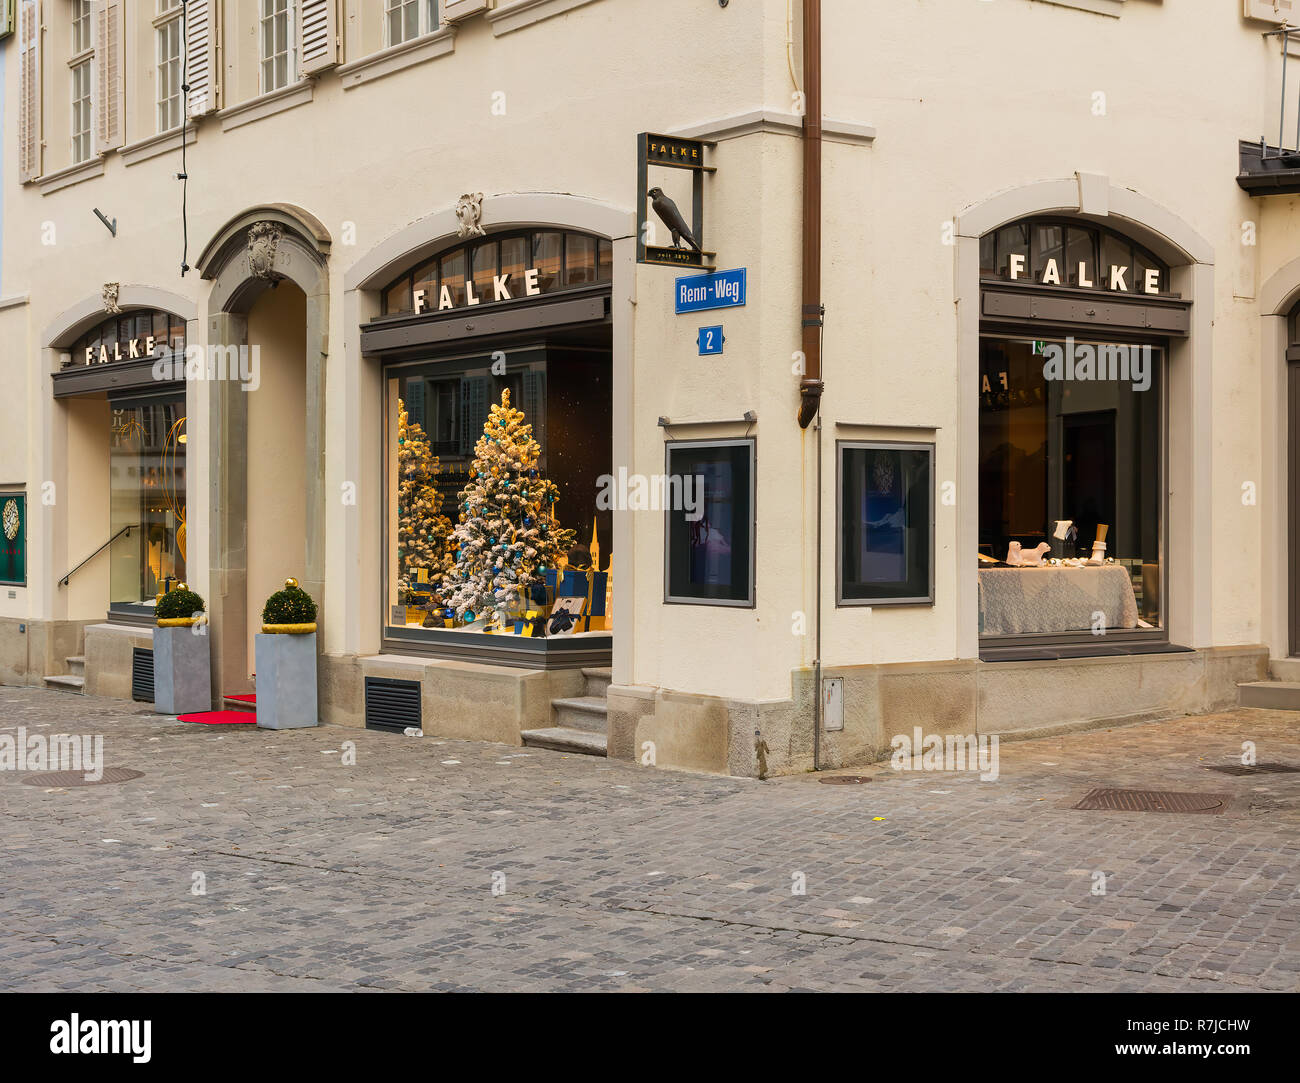 Zurigo, Svizzera - 6 Dicembre 2015: Falke store su Renn-Weg street nella parte storica della città di Zurigo nel tempo di avvento. Falke è un reggiseno Foto Stock